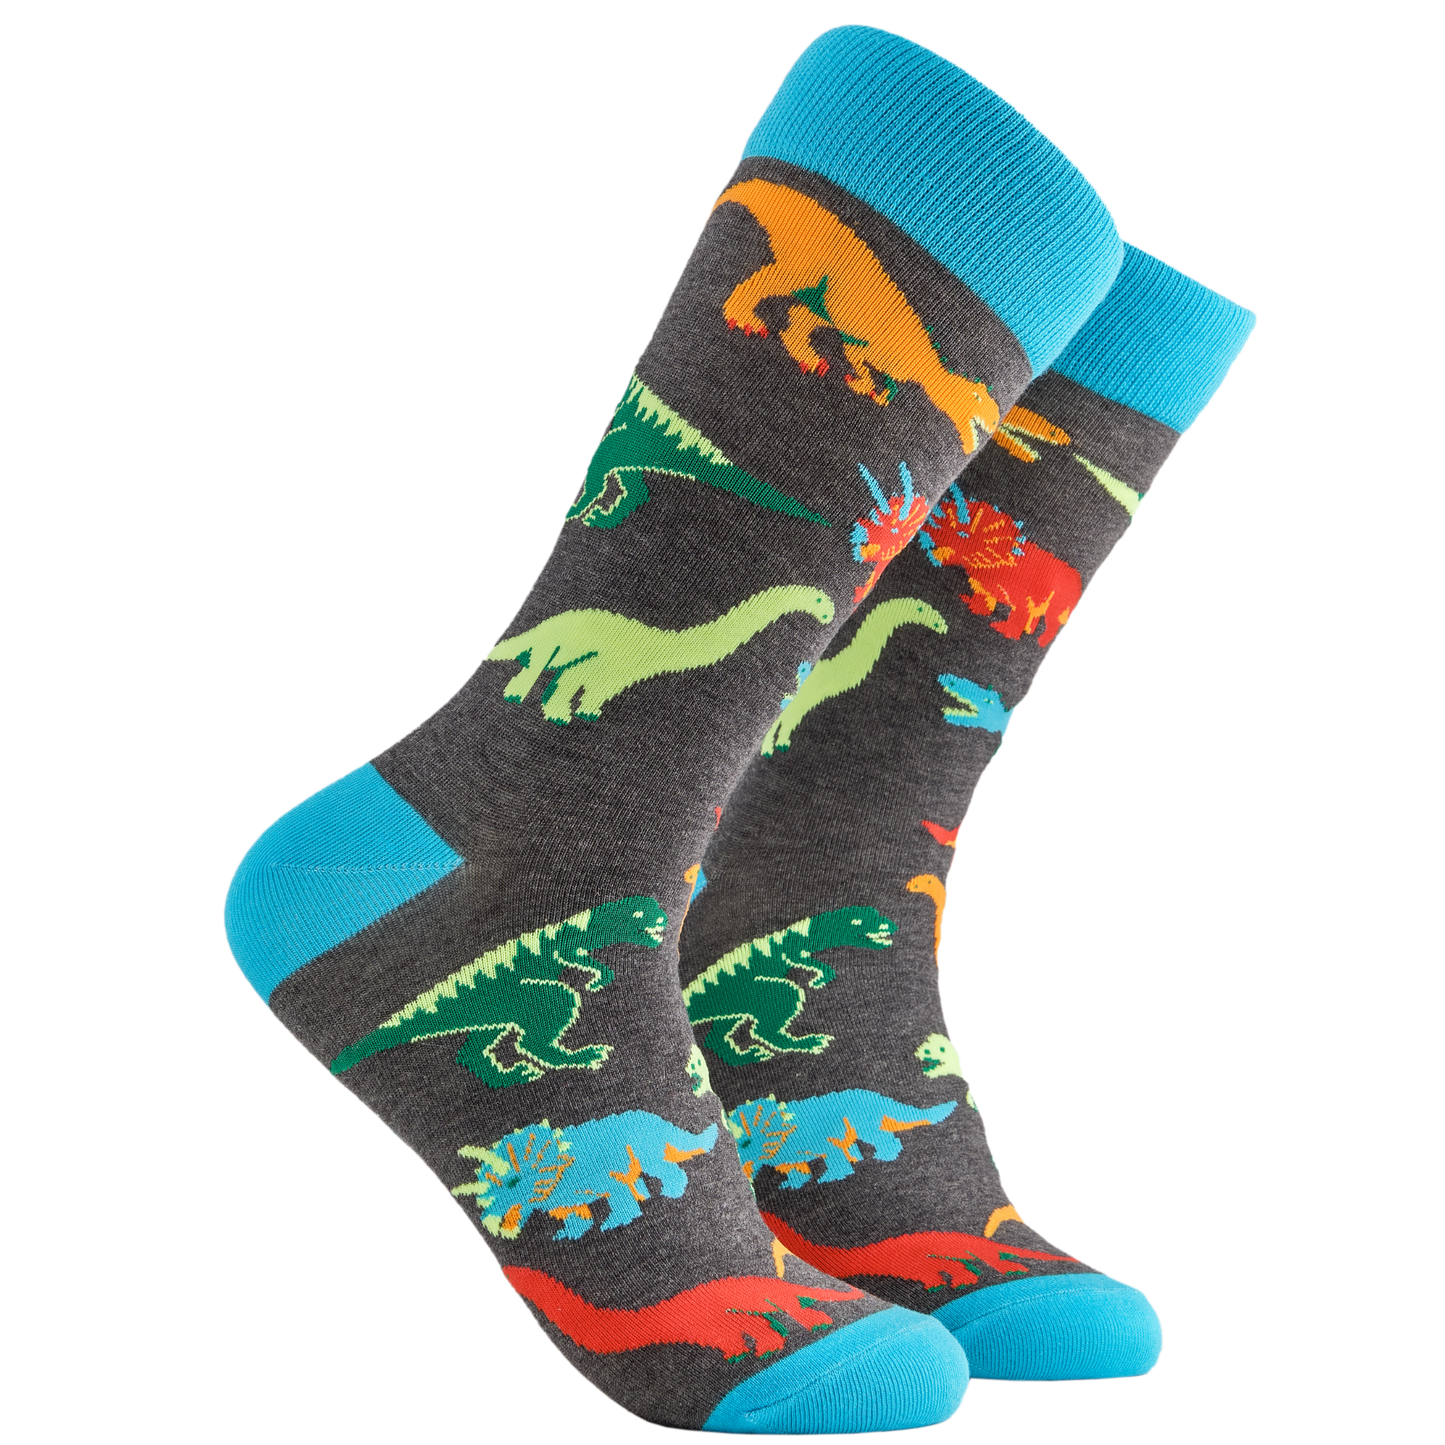 Dinosaur Socks - Jurassic. A pair of socks depicting dinosaurs. Grey legs, light blue cuff, heel and toe.